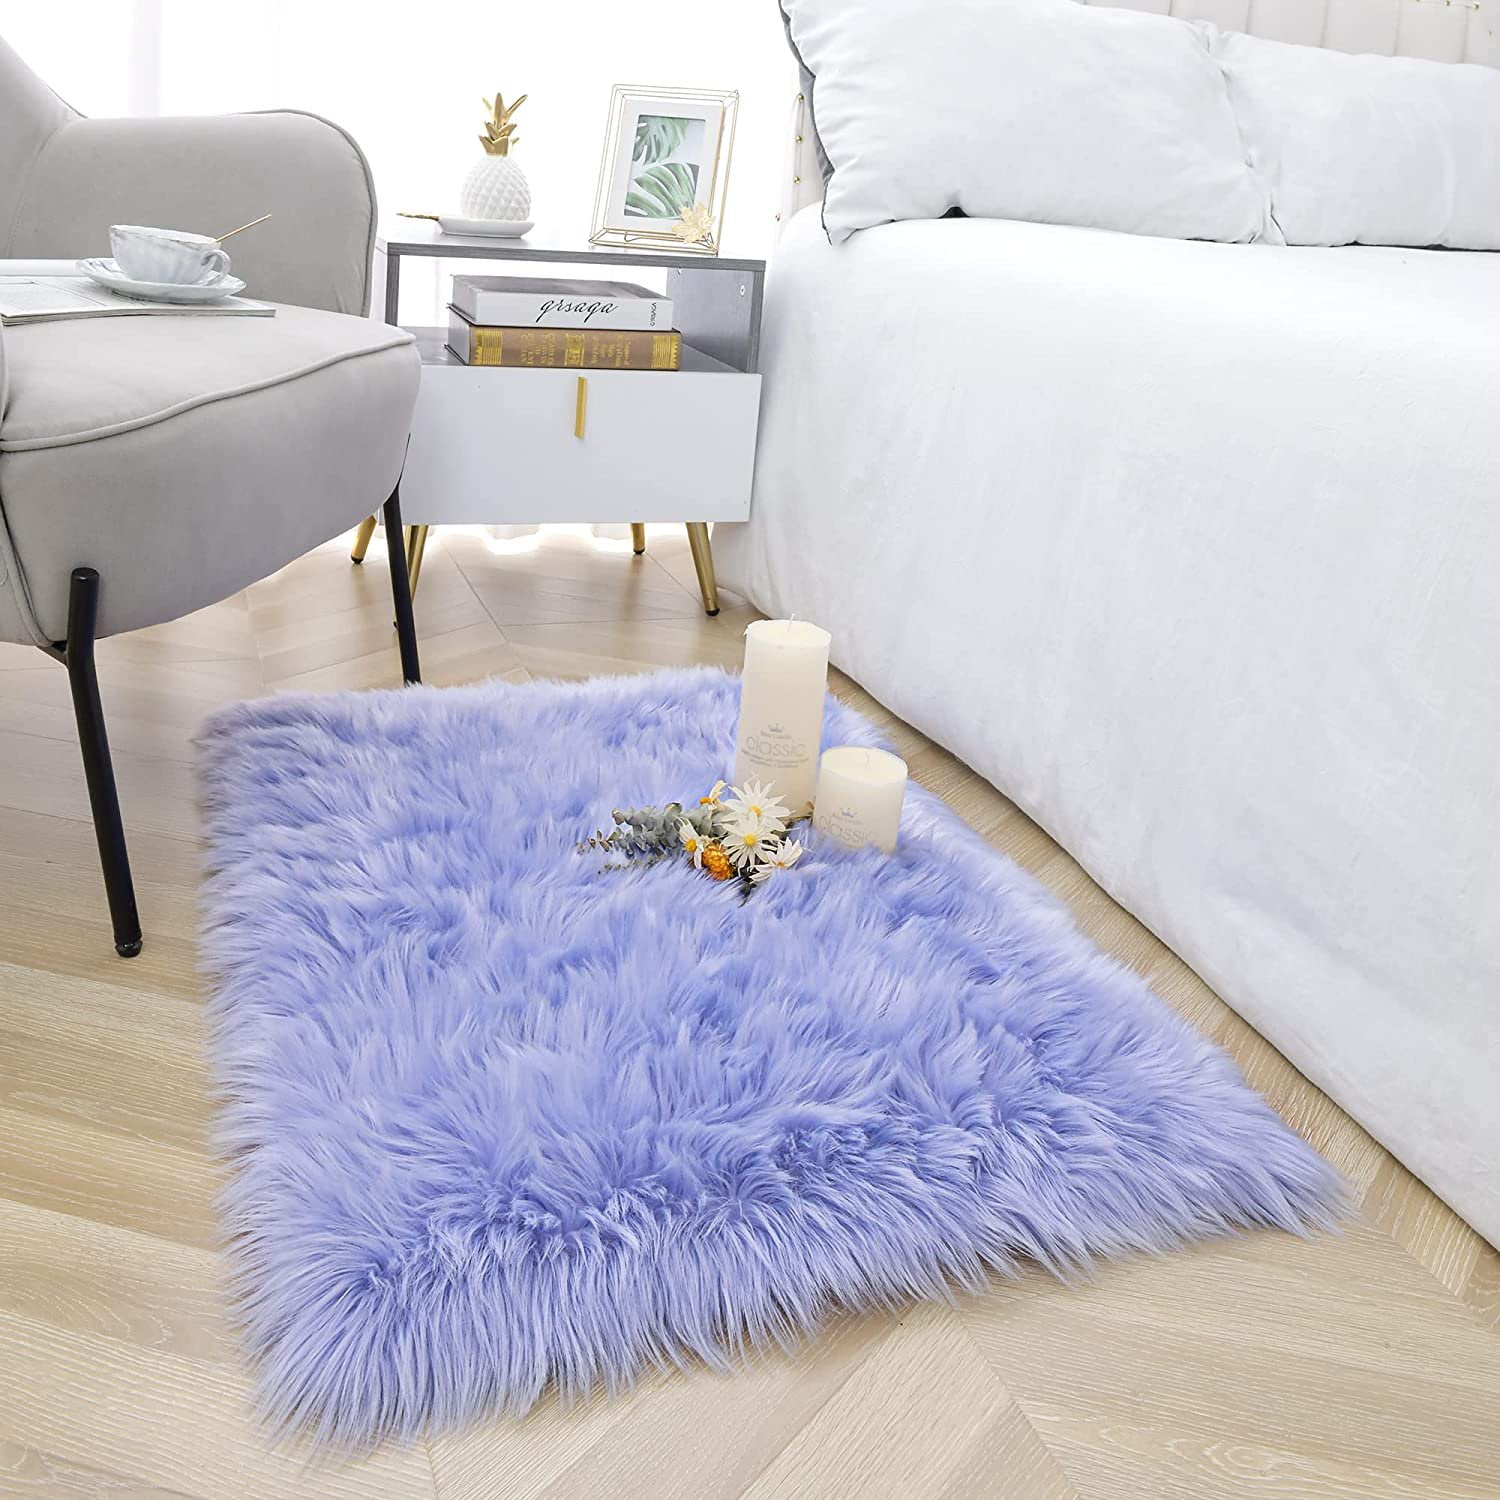 Sheepskin 19v78 Oval Rugs For Bedroom Bedside Living Room Carpet Nursery Washable Floor Mat, 2x3 Feet Pink